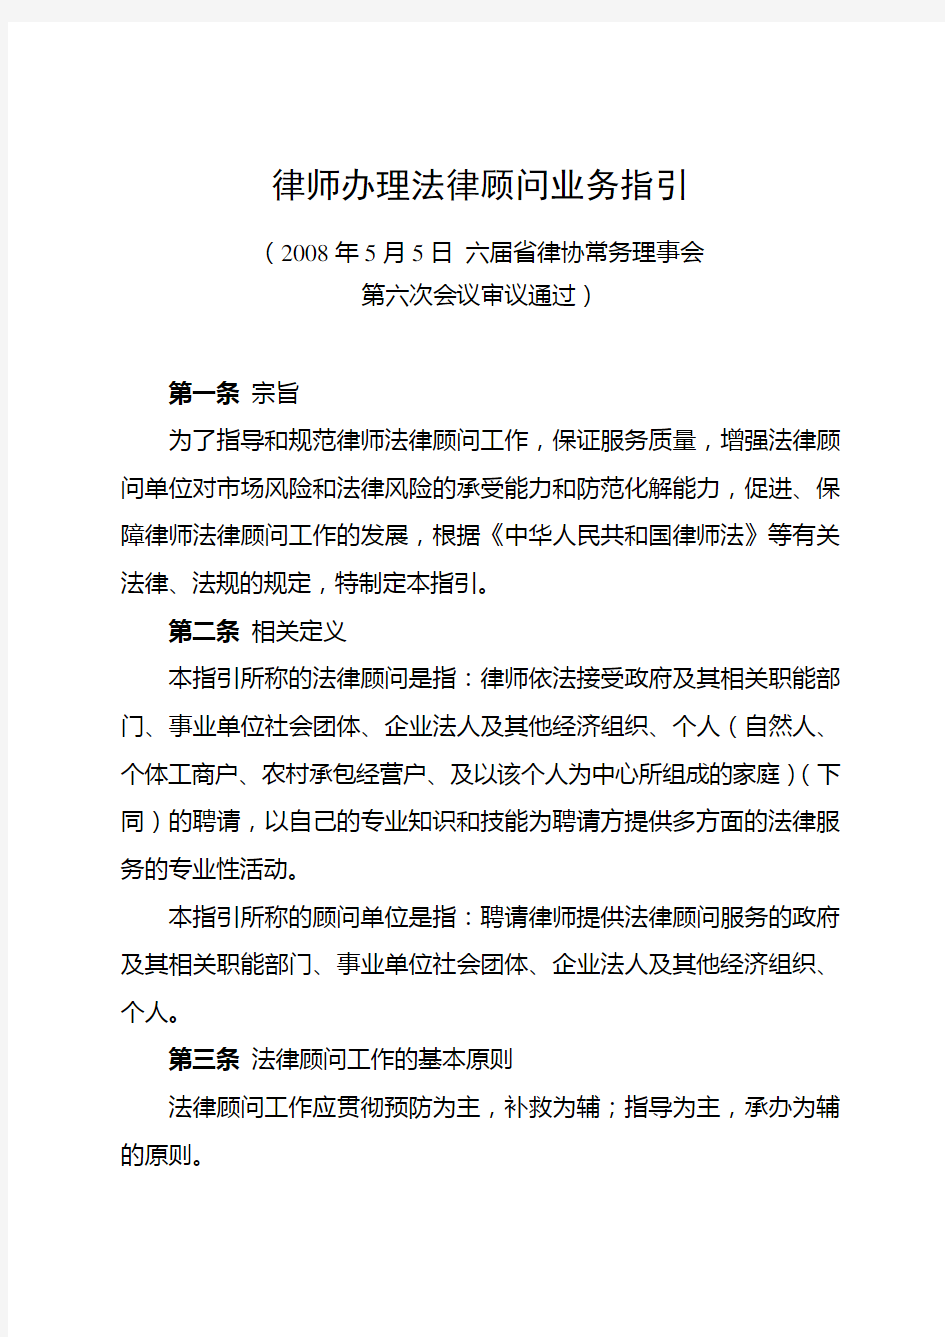 法律顾问业务指引-上海律协6210558培训课件